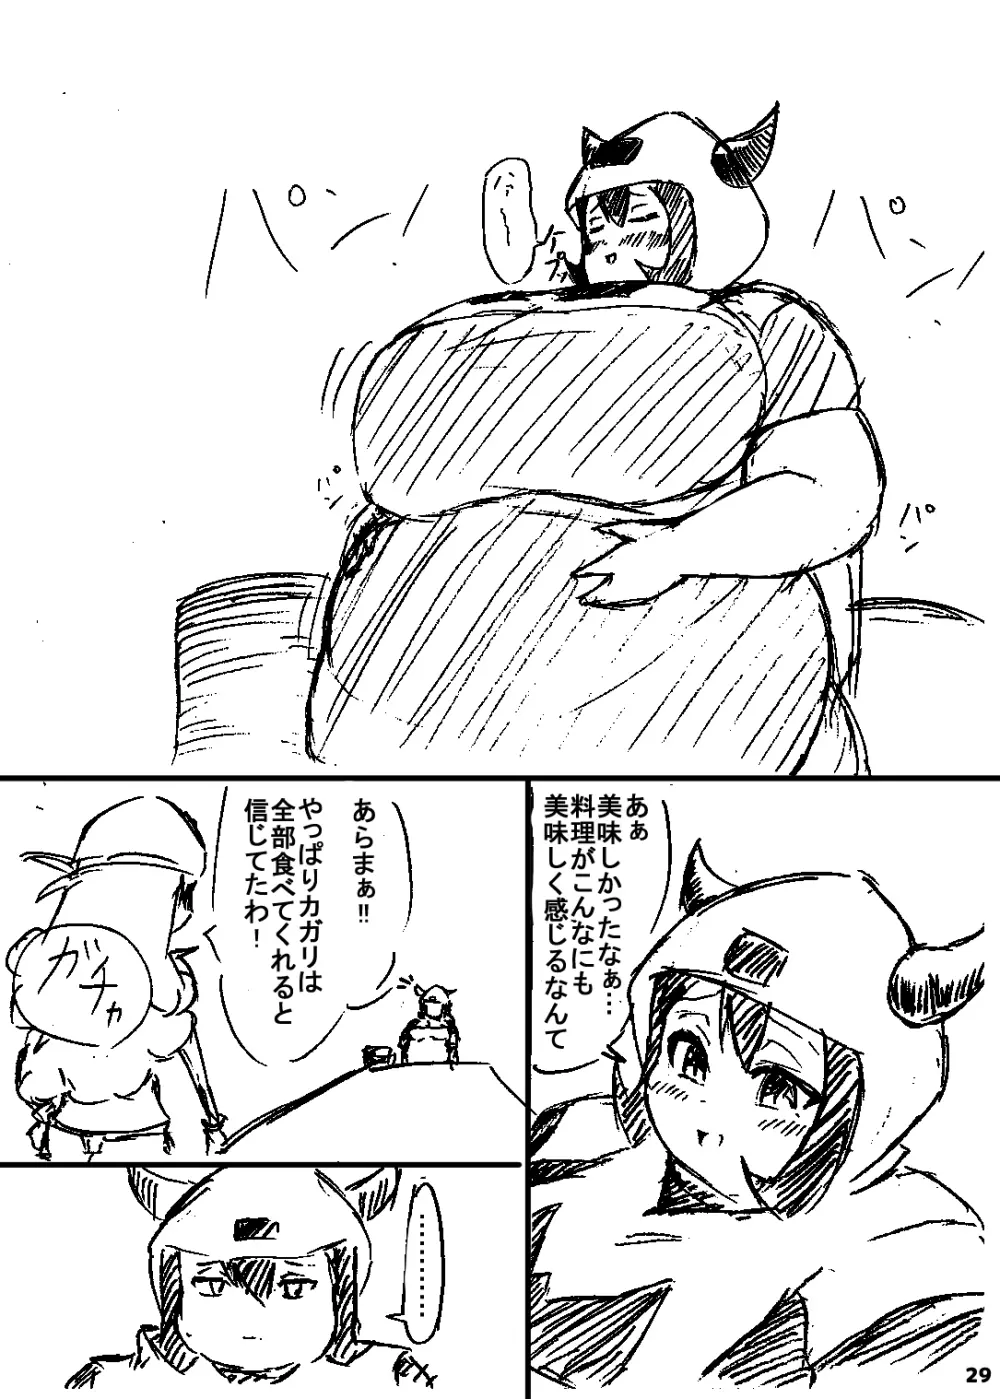 ポケスペカガリ肥満化漫画 28ページ